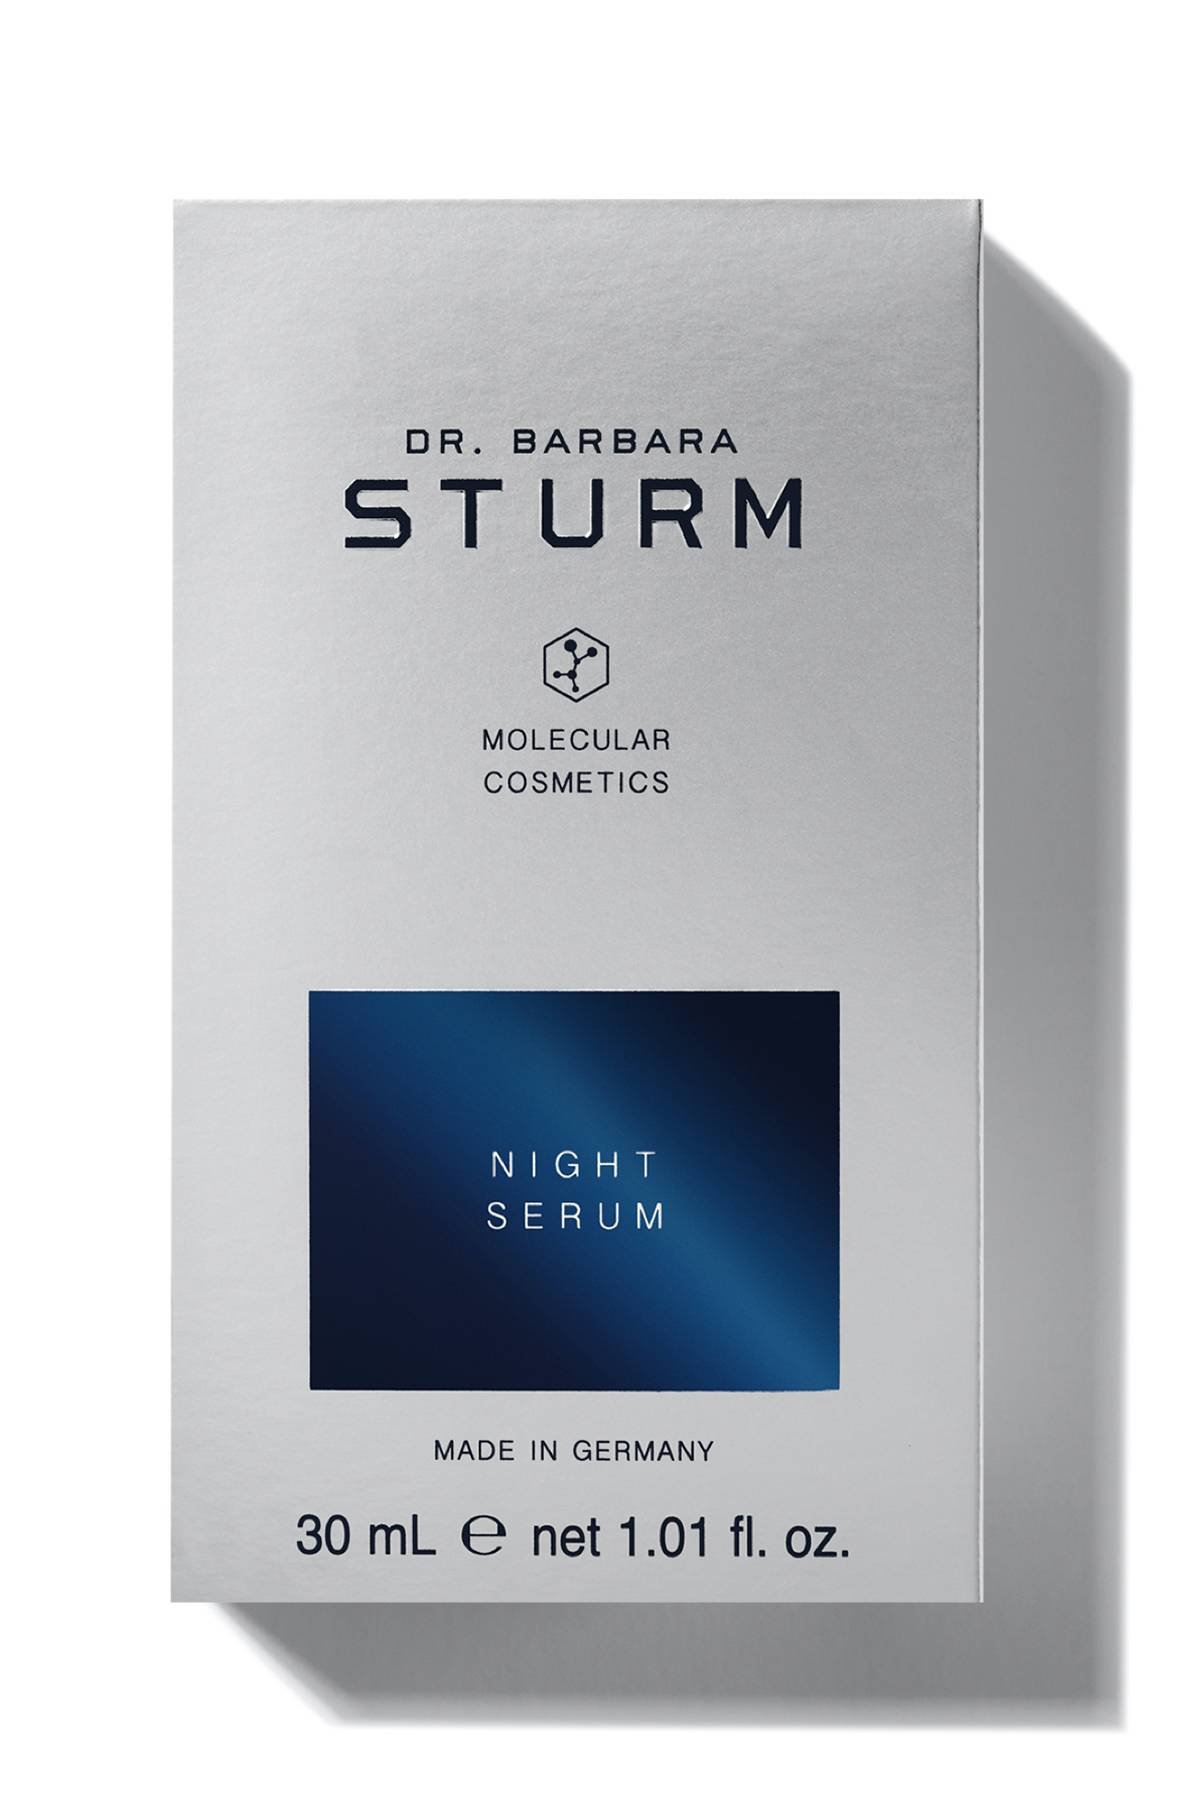 DR BARBARA STURM DR BARBARA STURM beauty night serum 30 ml